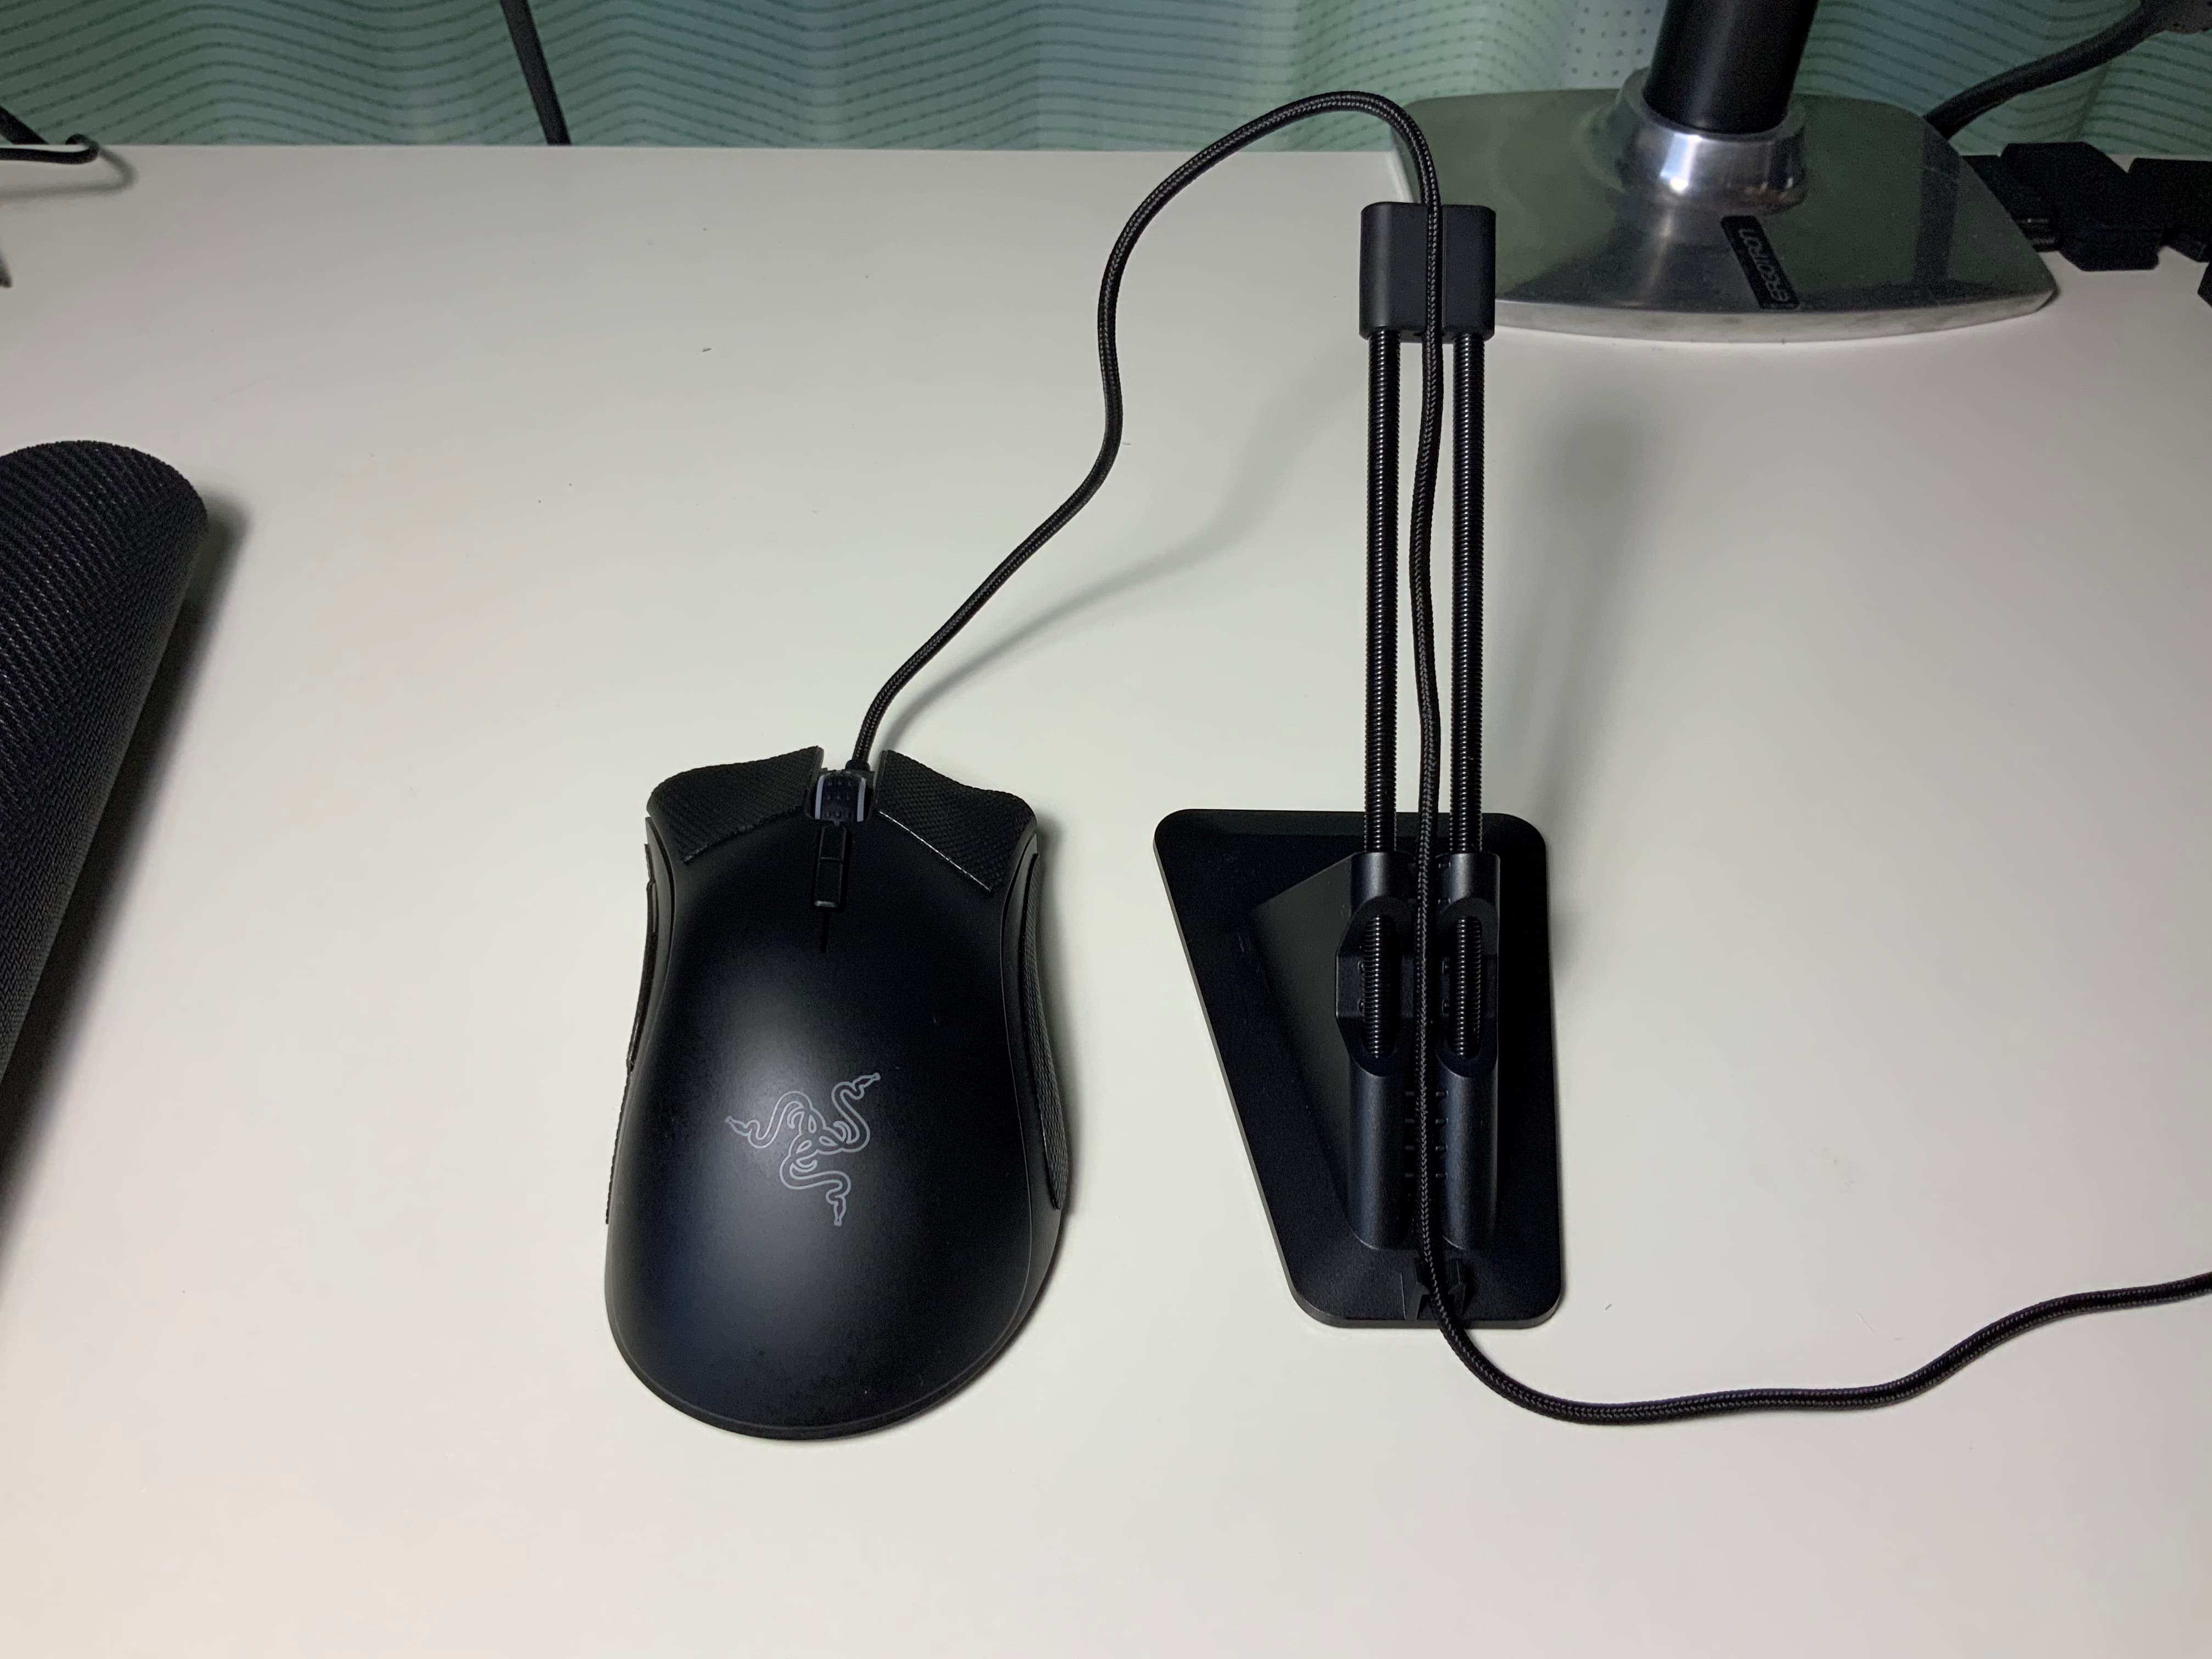 1542円 最高の品質の Razer Mouse Bungee V2 マウスバンジー ケーブル コード ブラック ホルダー マネジメント システム 日本正規代理店保